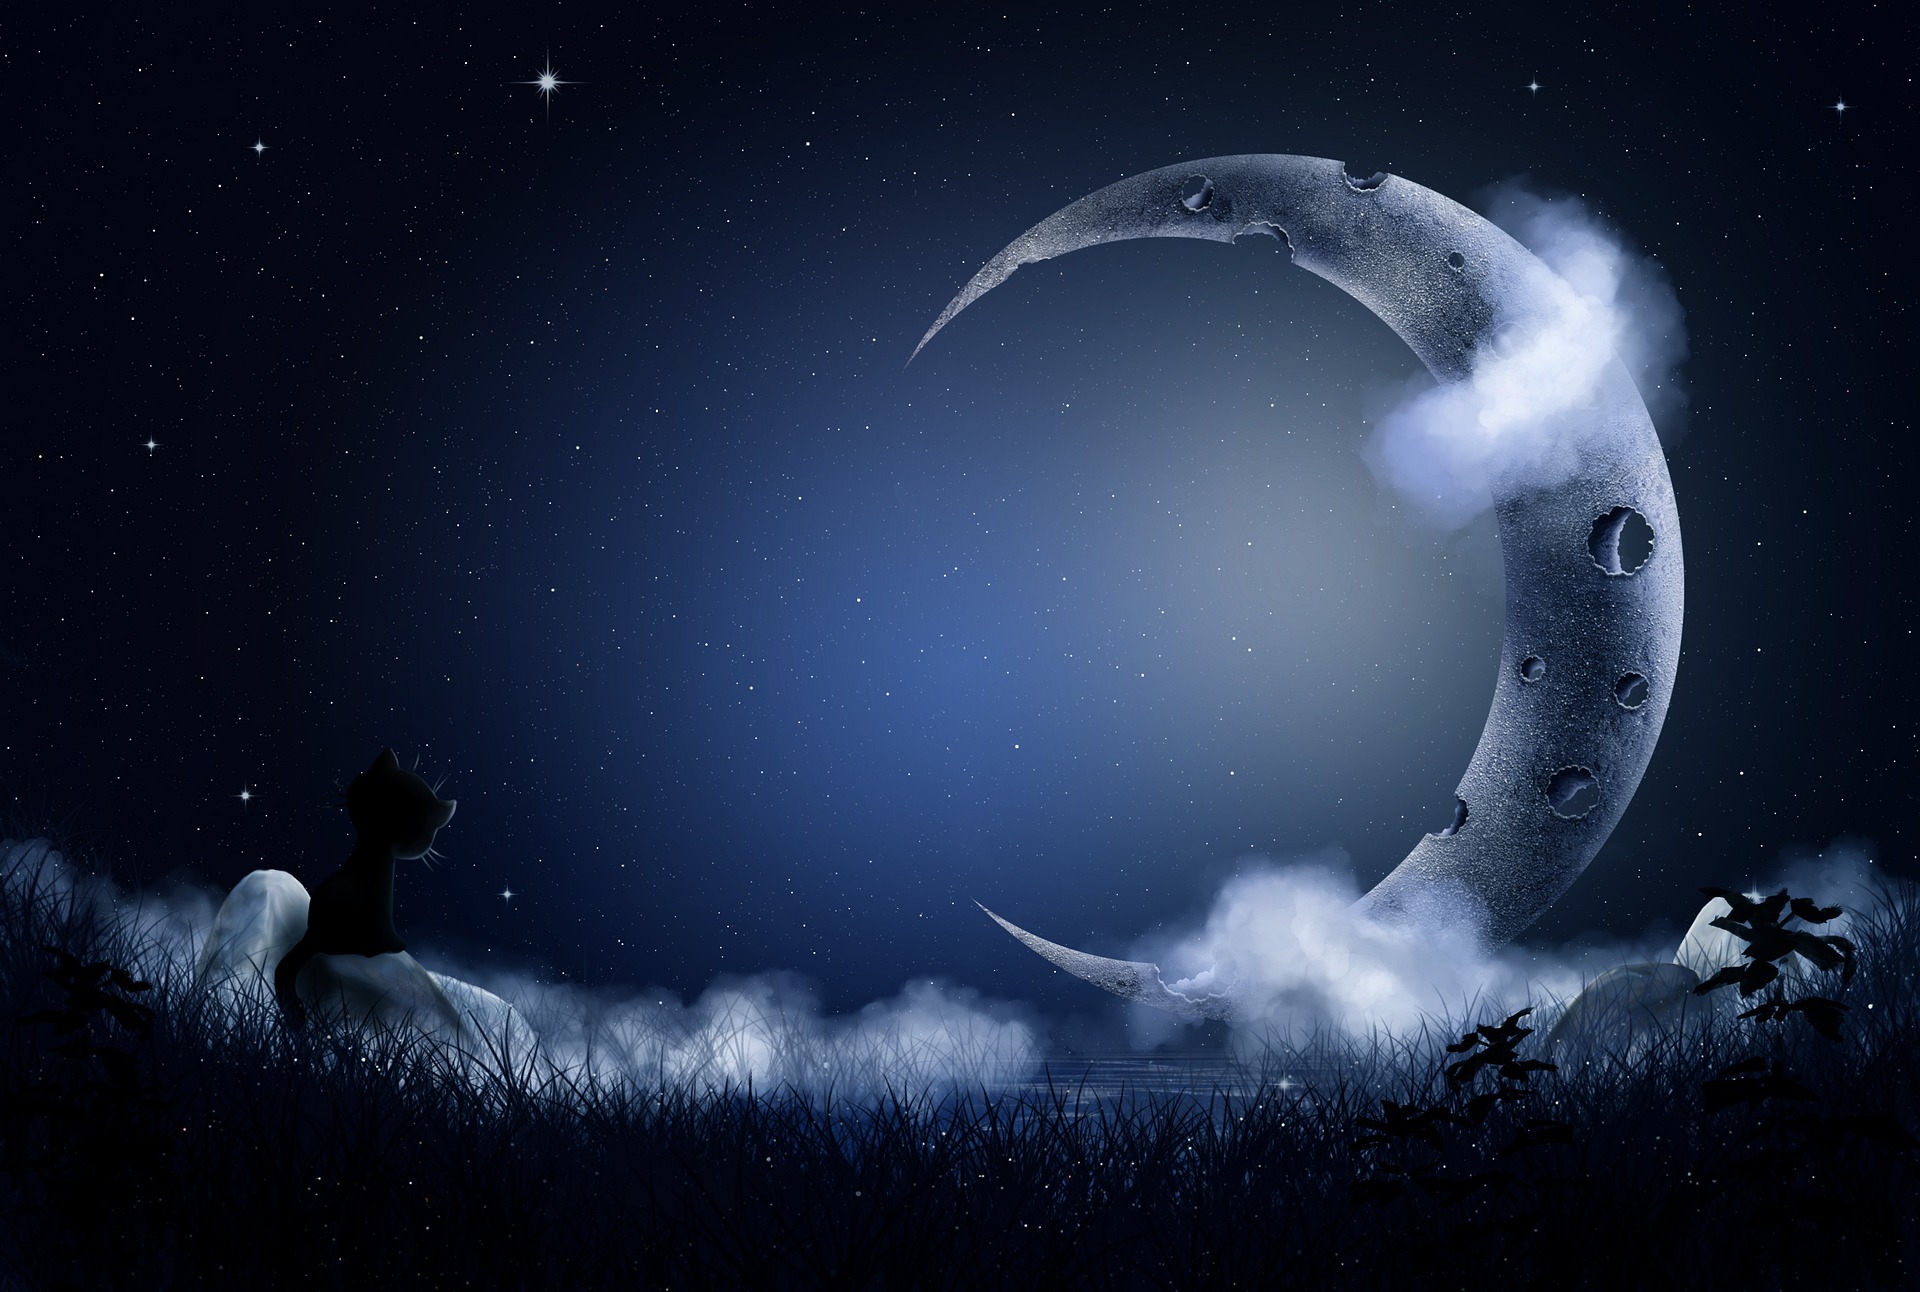 Na tle gwieździstego nieba duży księżyc w nowiu. Na pierwszym planie czarny kotek patrzący w gwiazdy.